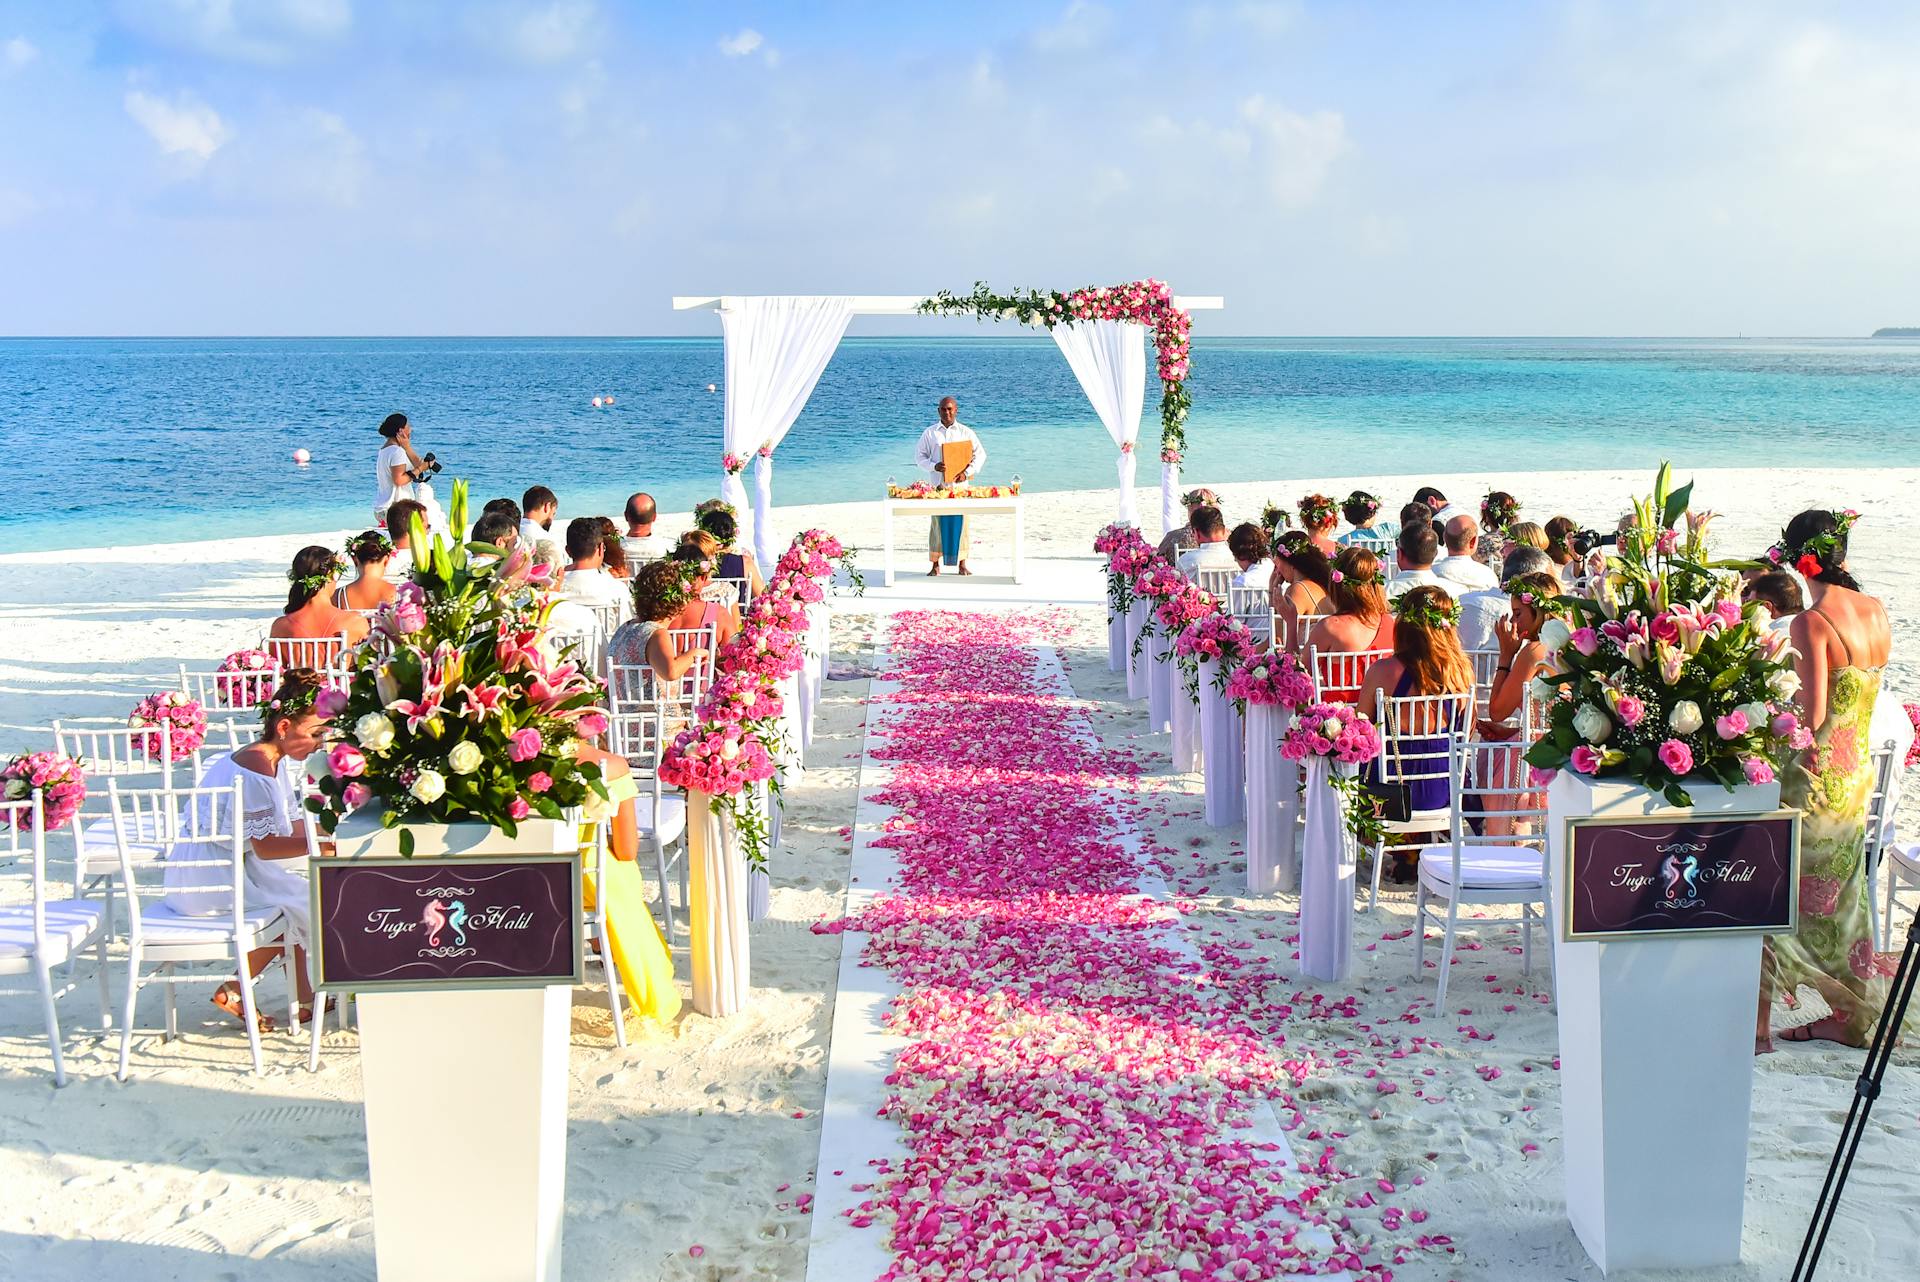 Un mariage sur la plage | Source : Pexels